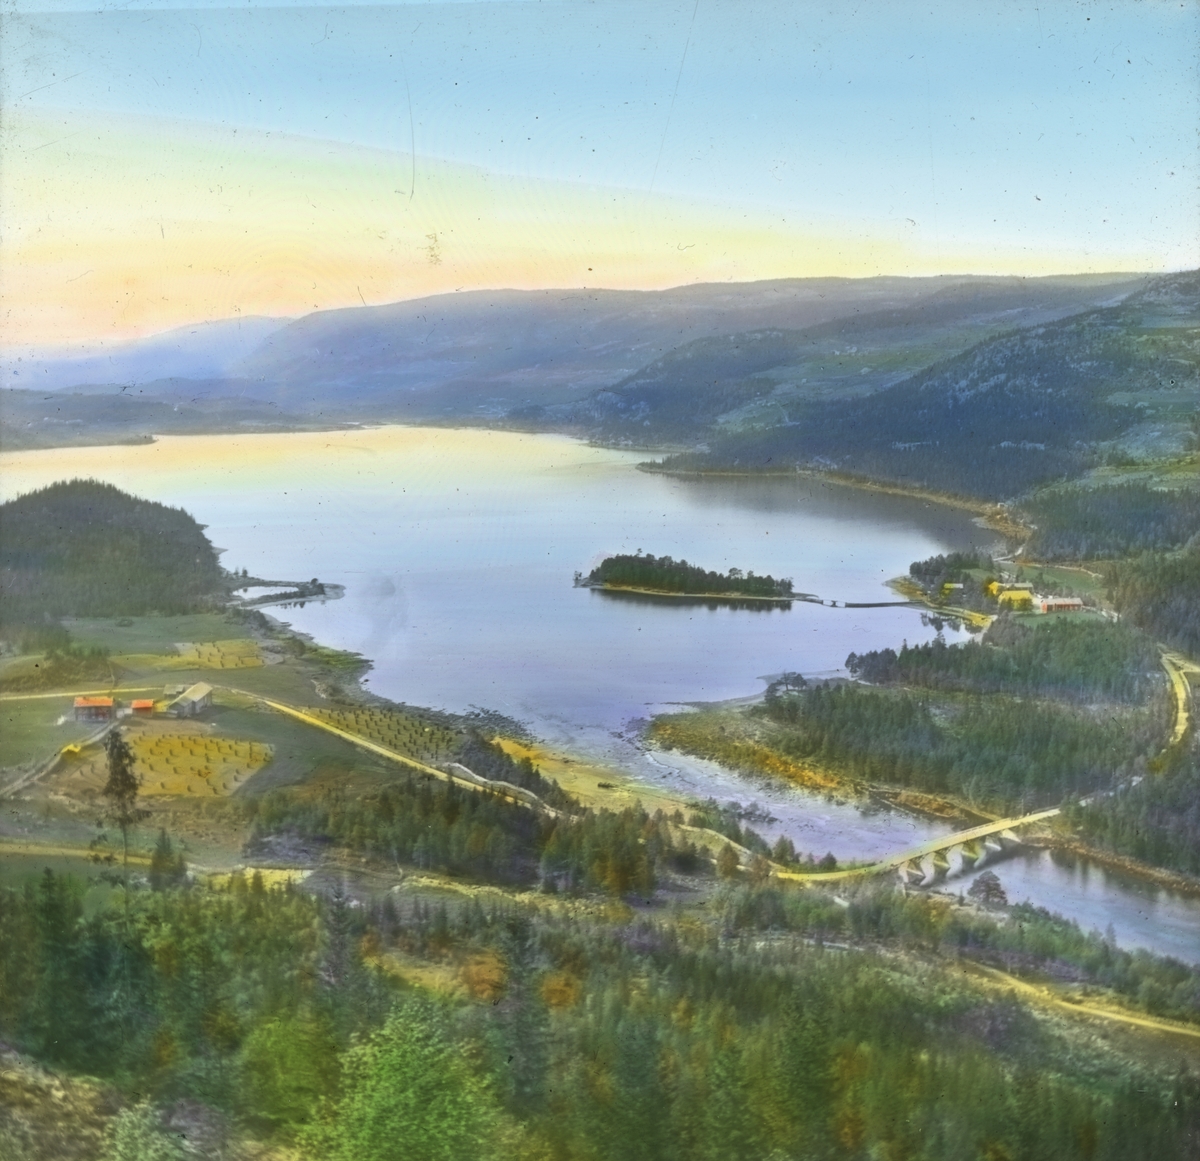 Håndkolorert dias. En bro krysser Strondafjorden, også kalt Strandafjorden, i Valdres.